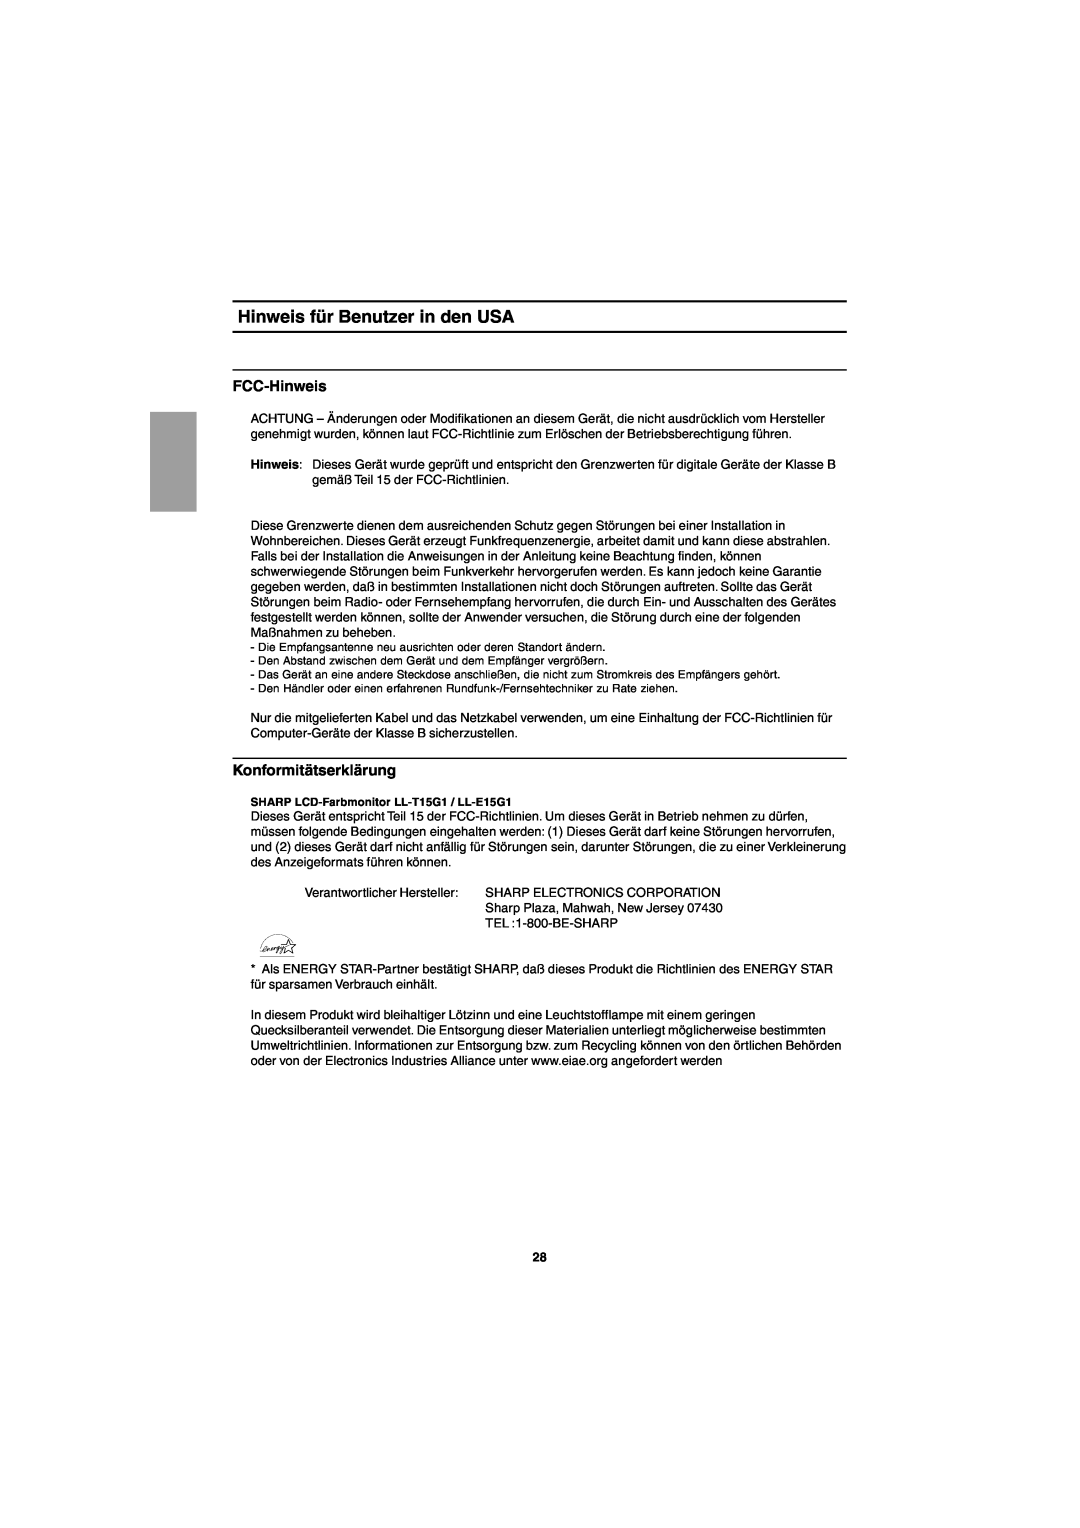 Sharp LL-T15G1, LL-E15G1 operation manual Hinweis für Benutzer in den USA, FCC-Hinweis, Konformitätserklärung 